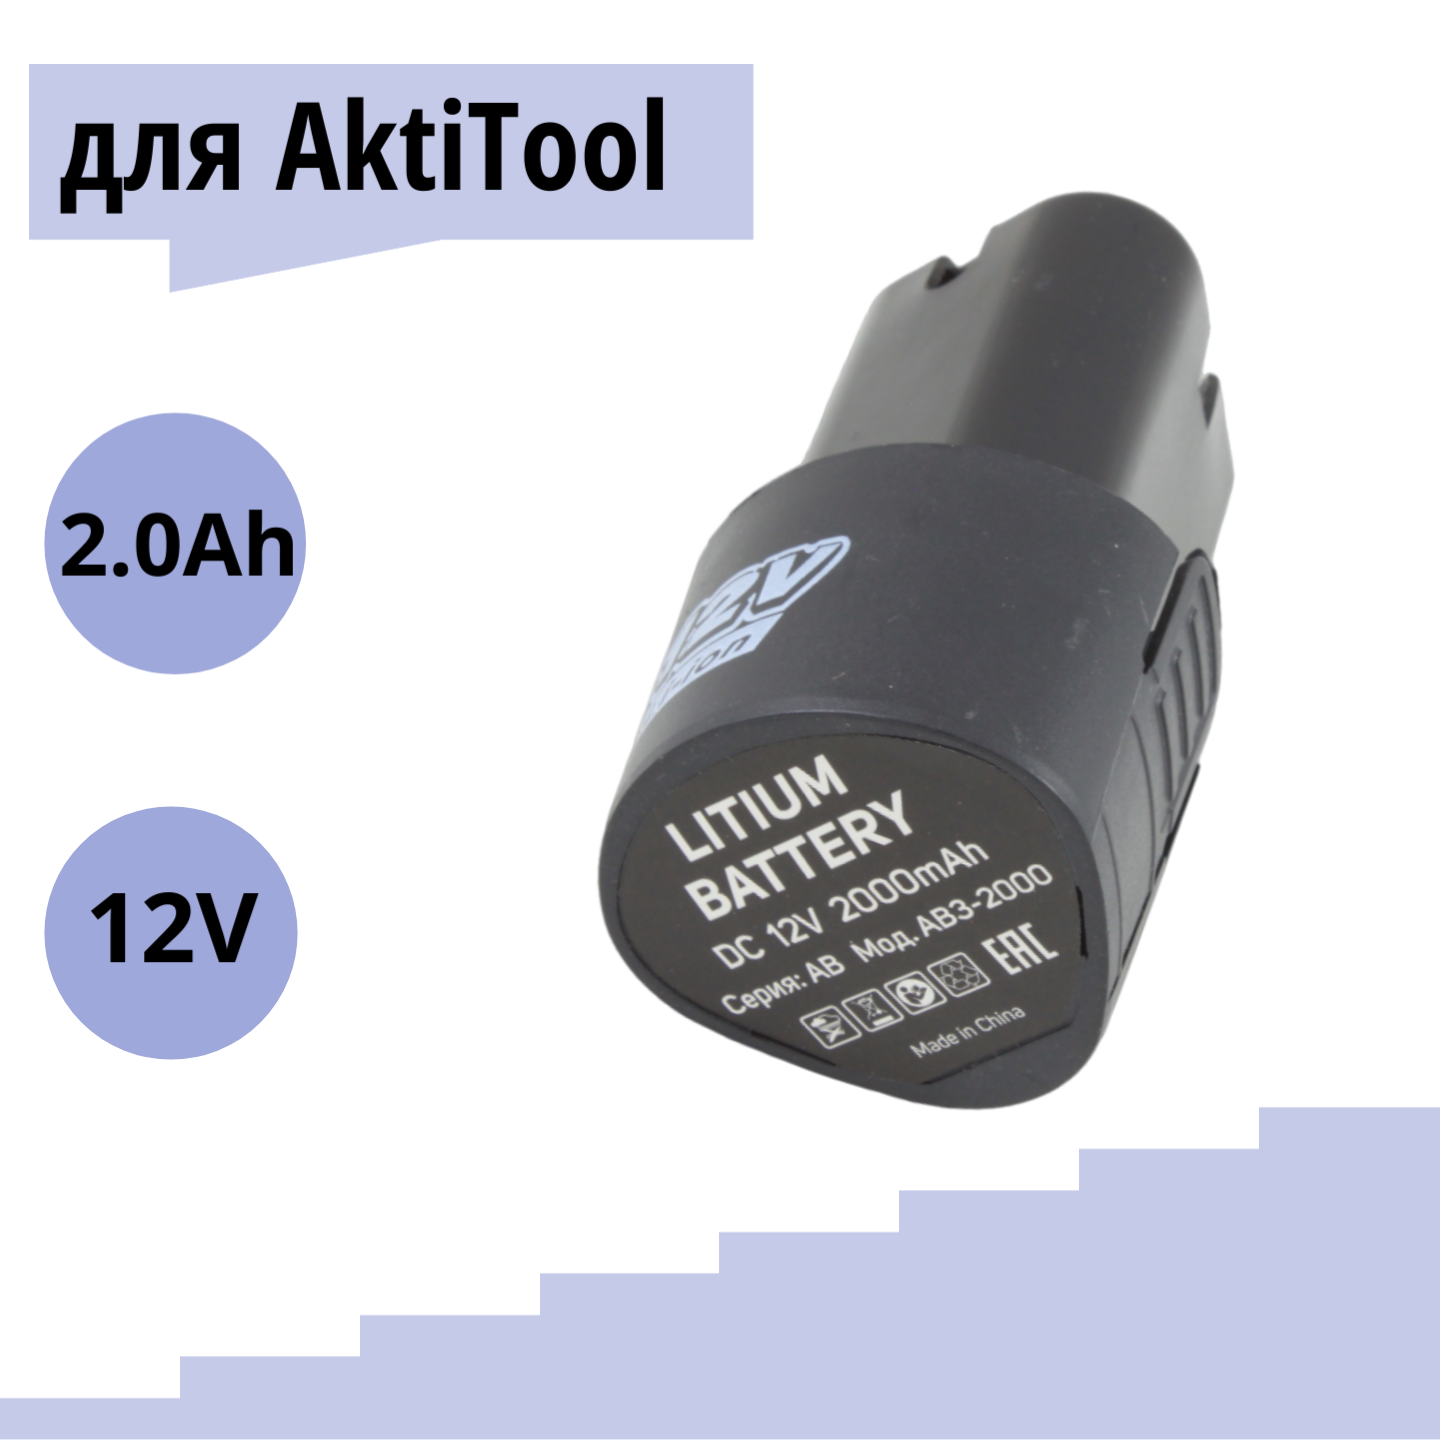 Литий-ионный аккумулятор AktiTool для дрели-шуруповерта AB3-2000 12В 2.0 mAh